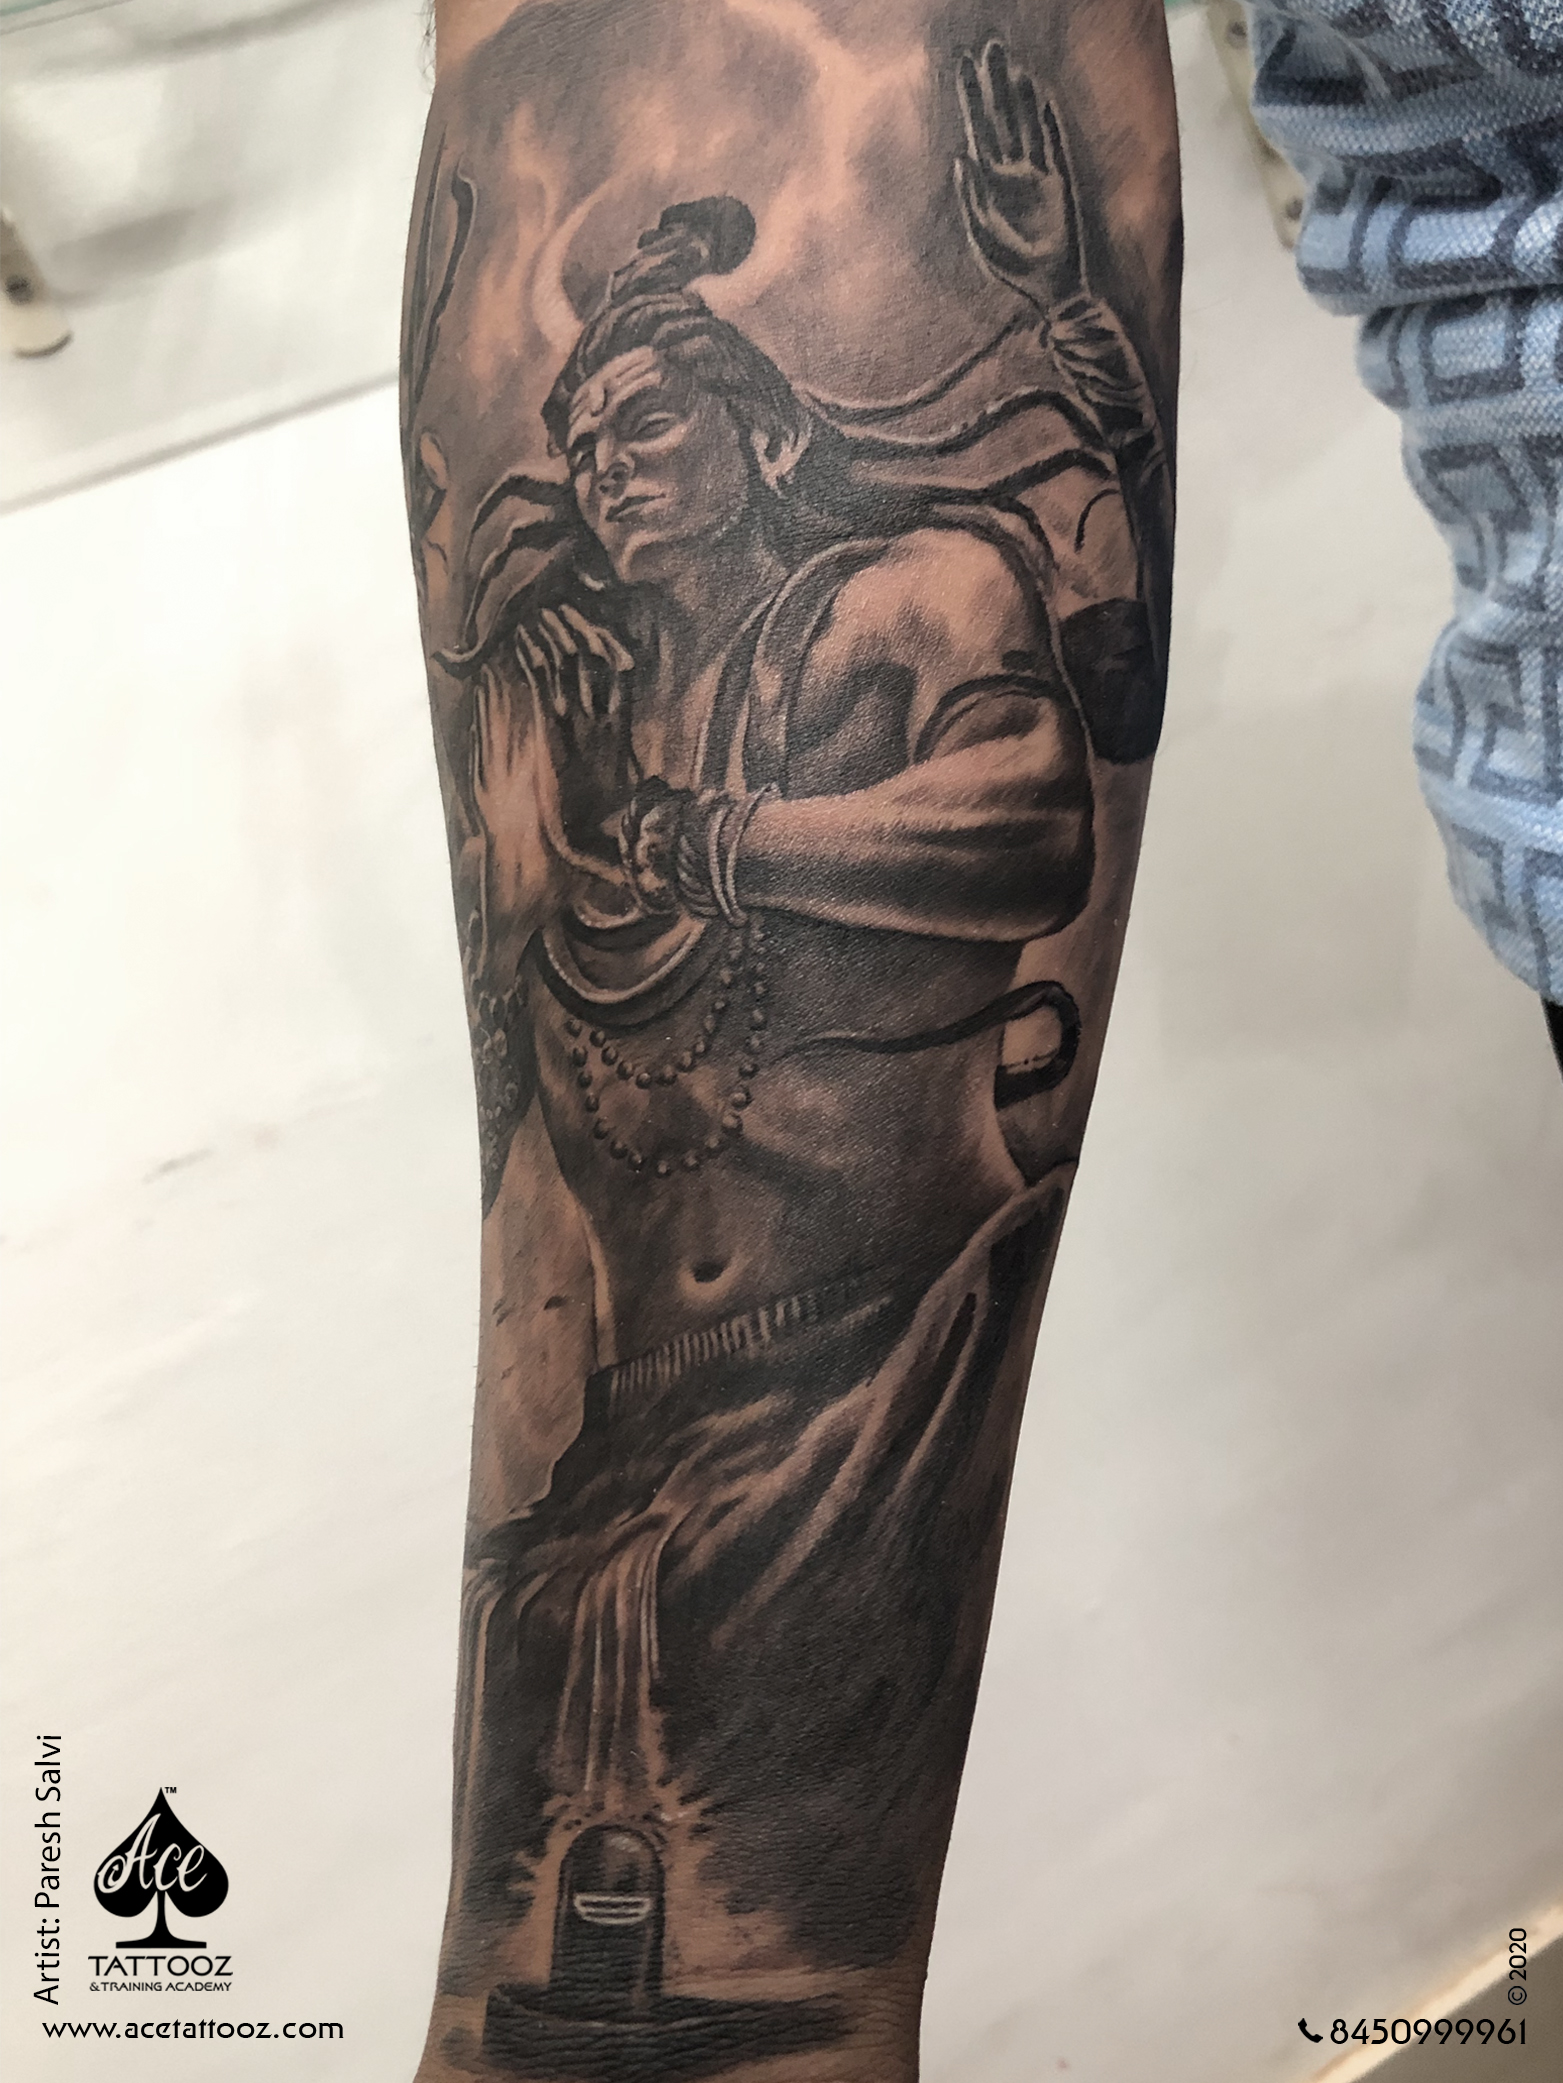 Tattoo uploaded by Get Ink'D by MANAV HUDDA • Lord Shiva Tattoo.  #manavhudda #getinkd #meerut ⁣#trishultattoo #om #omtattoo #shiva  #lordshivatattoo #shivtattoosr #shivtattoodesighn #shivtattoodesign  #shivtattoolover🕉 #shivtattoolover ...